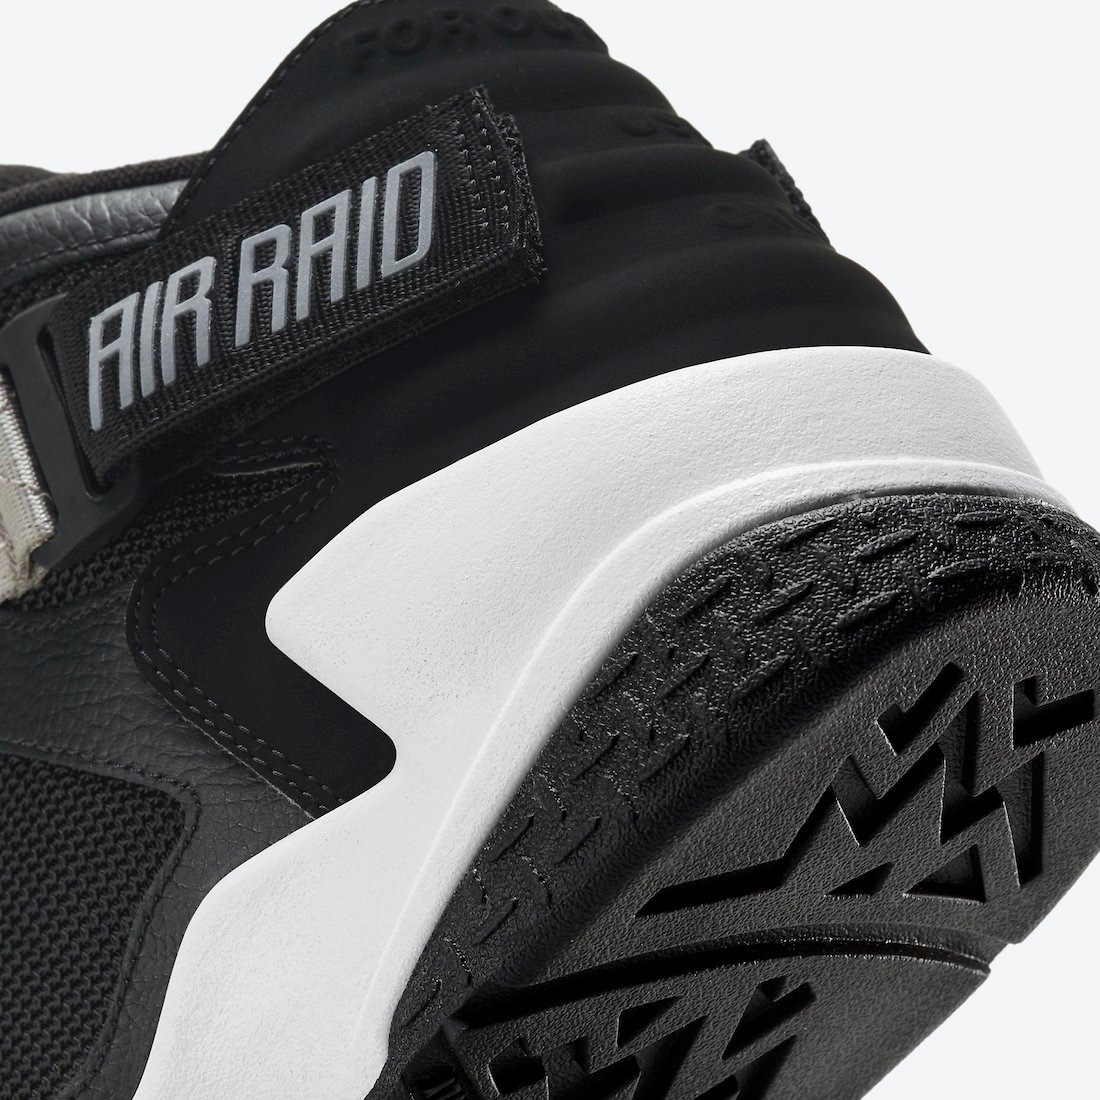 Nike Air Raid OG Black Grey DC1412-001 2020 Release Date Info ...